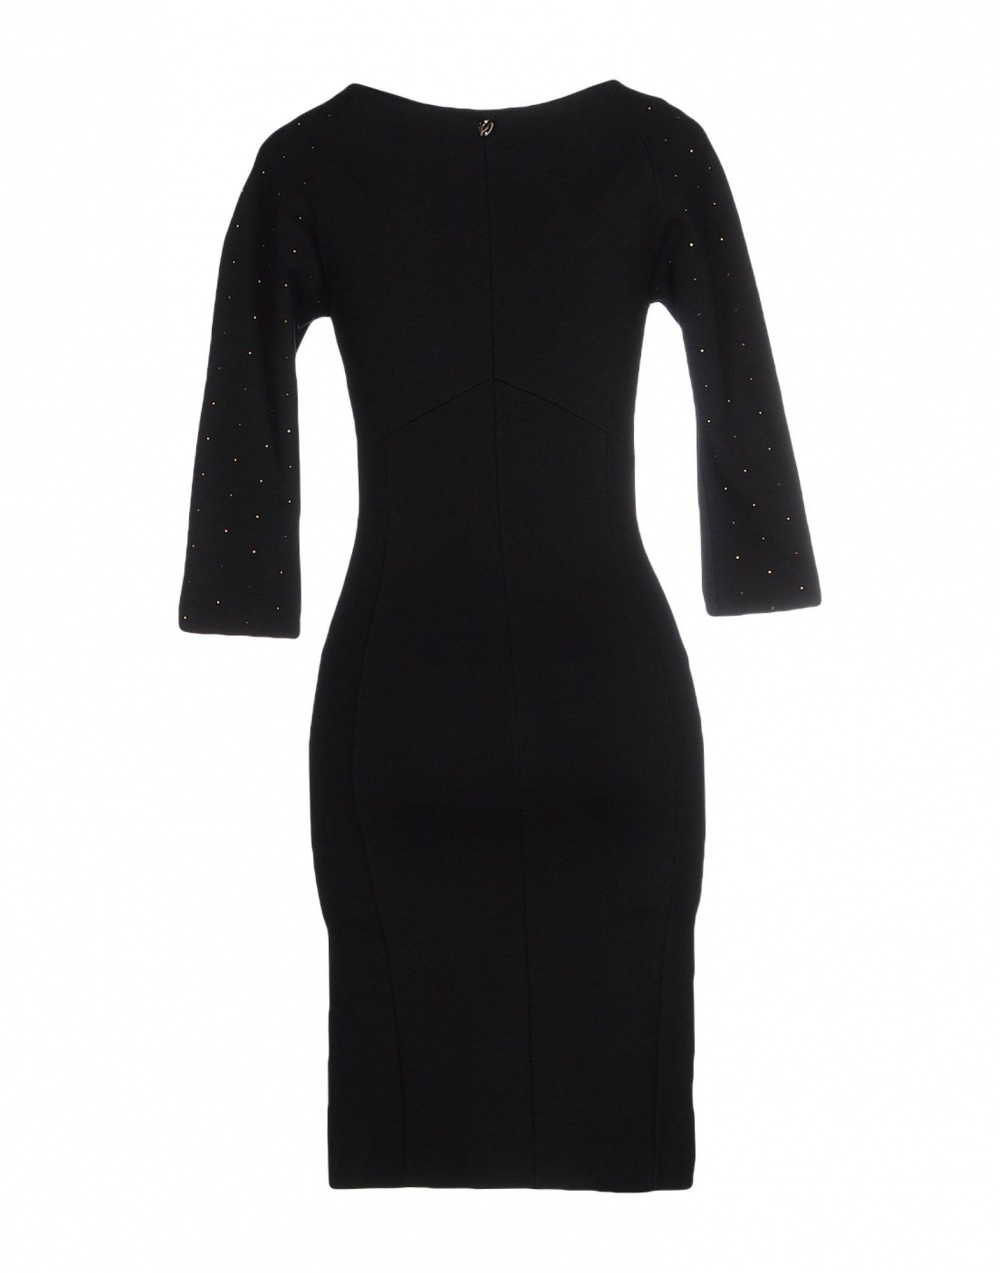 Маленькое черное платье SISTE' S, 48 (Российский размер) дизайнер:46 (IT). Черный